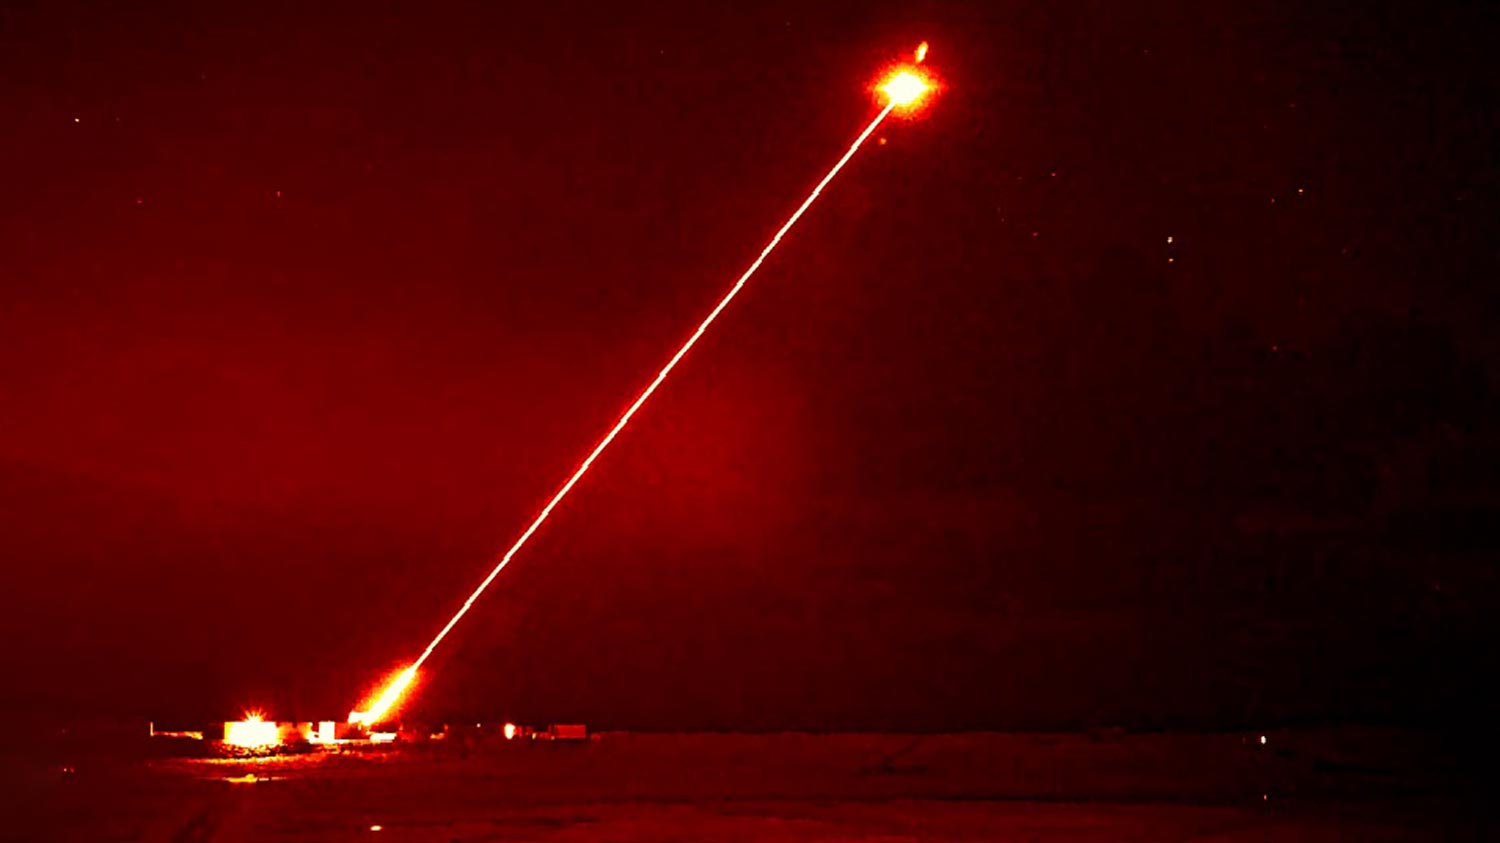 UK Kini Juga Mempunyai Senjata Laser